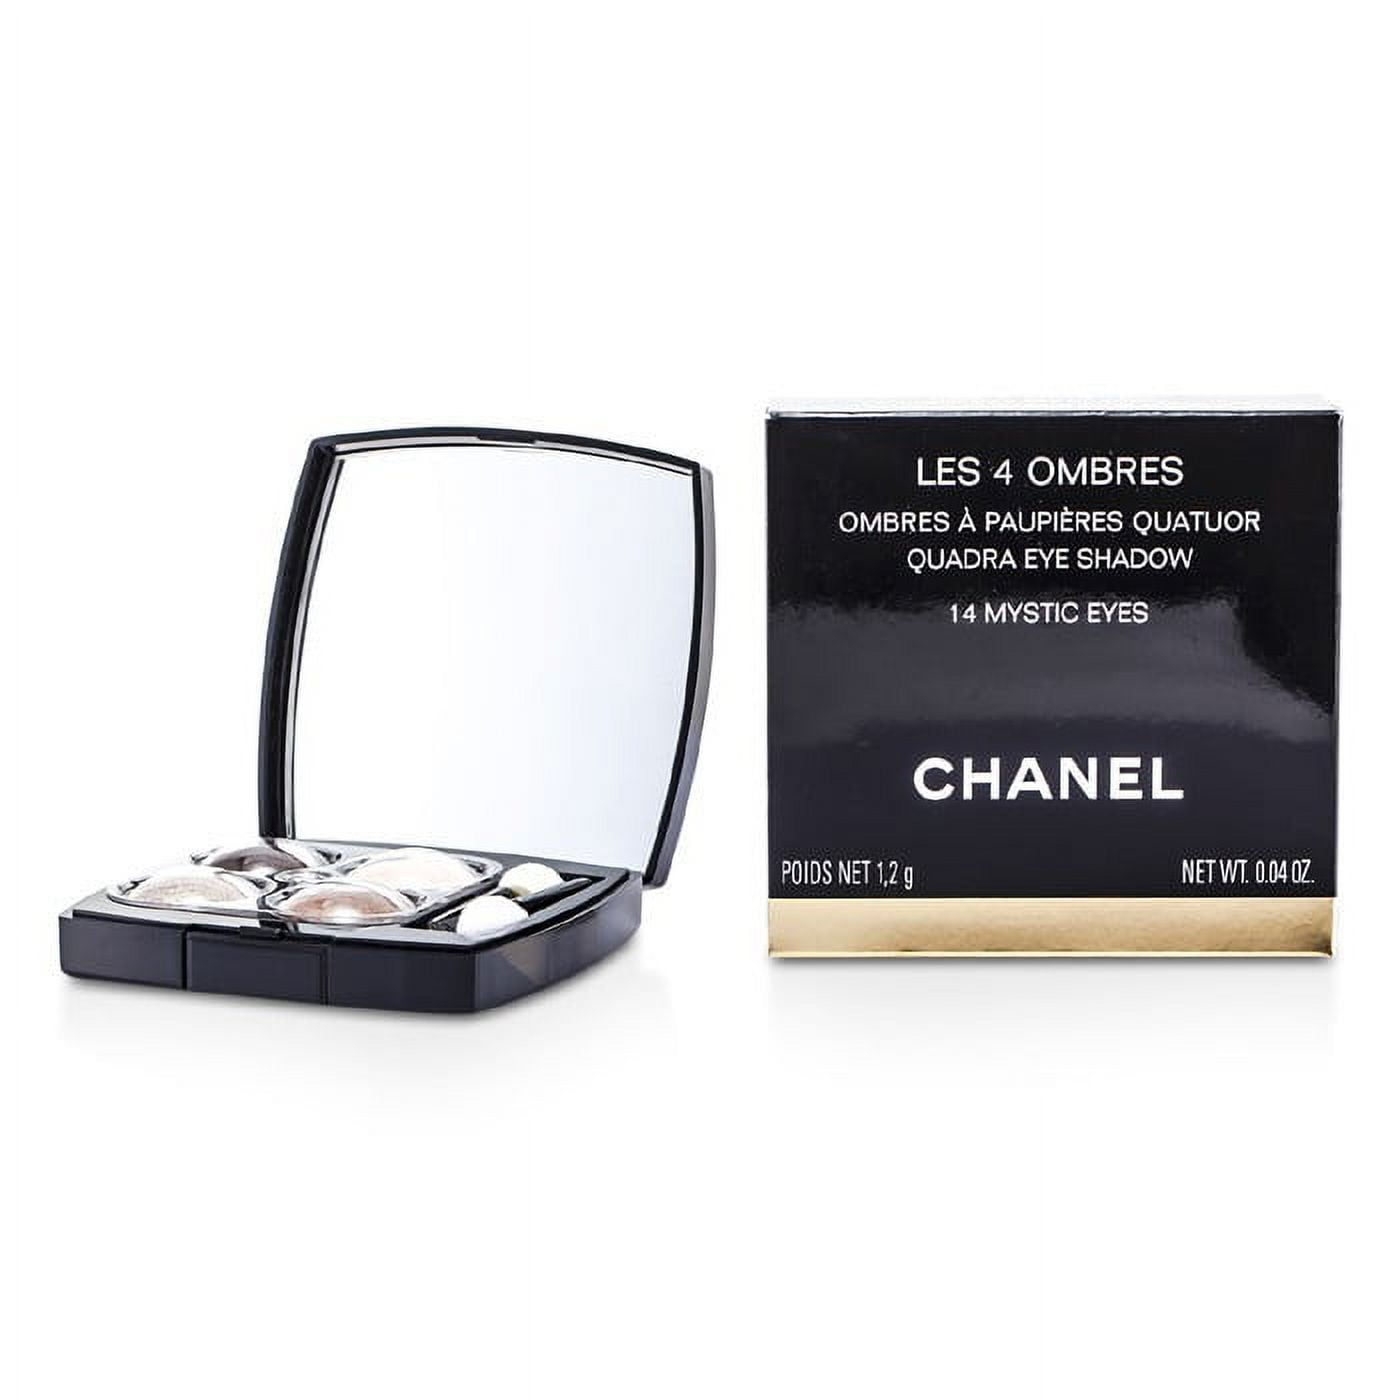 Chanel Les 4 Ombres Multi-Effect Quadra Eyeshadow # 14 Mystic Eyes 0.04 oz  Eyeshadow 